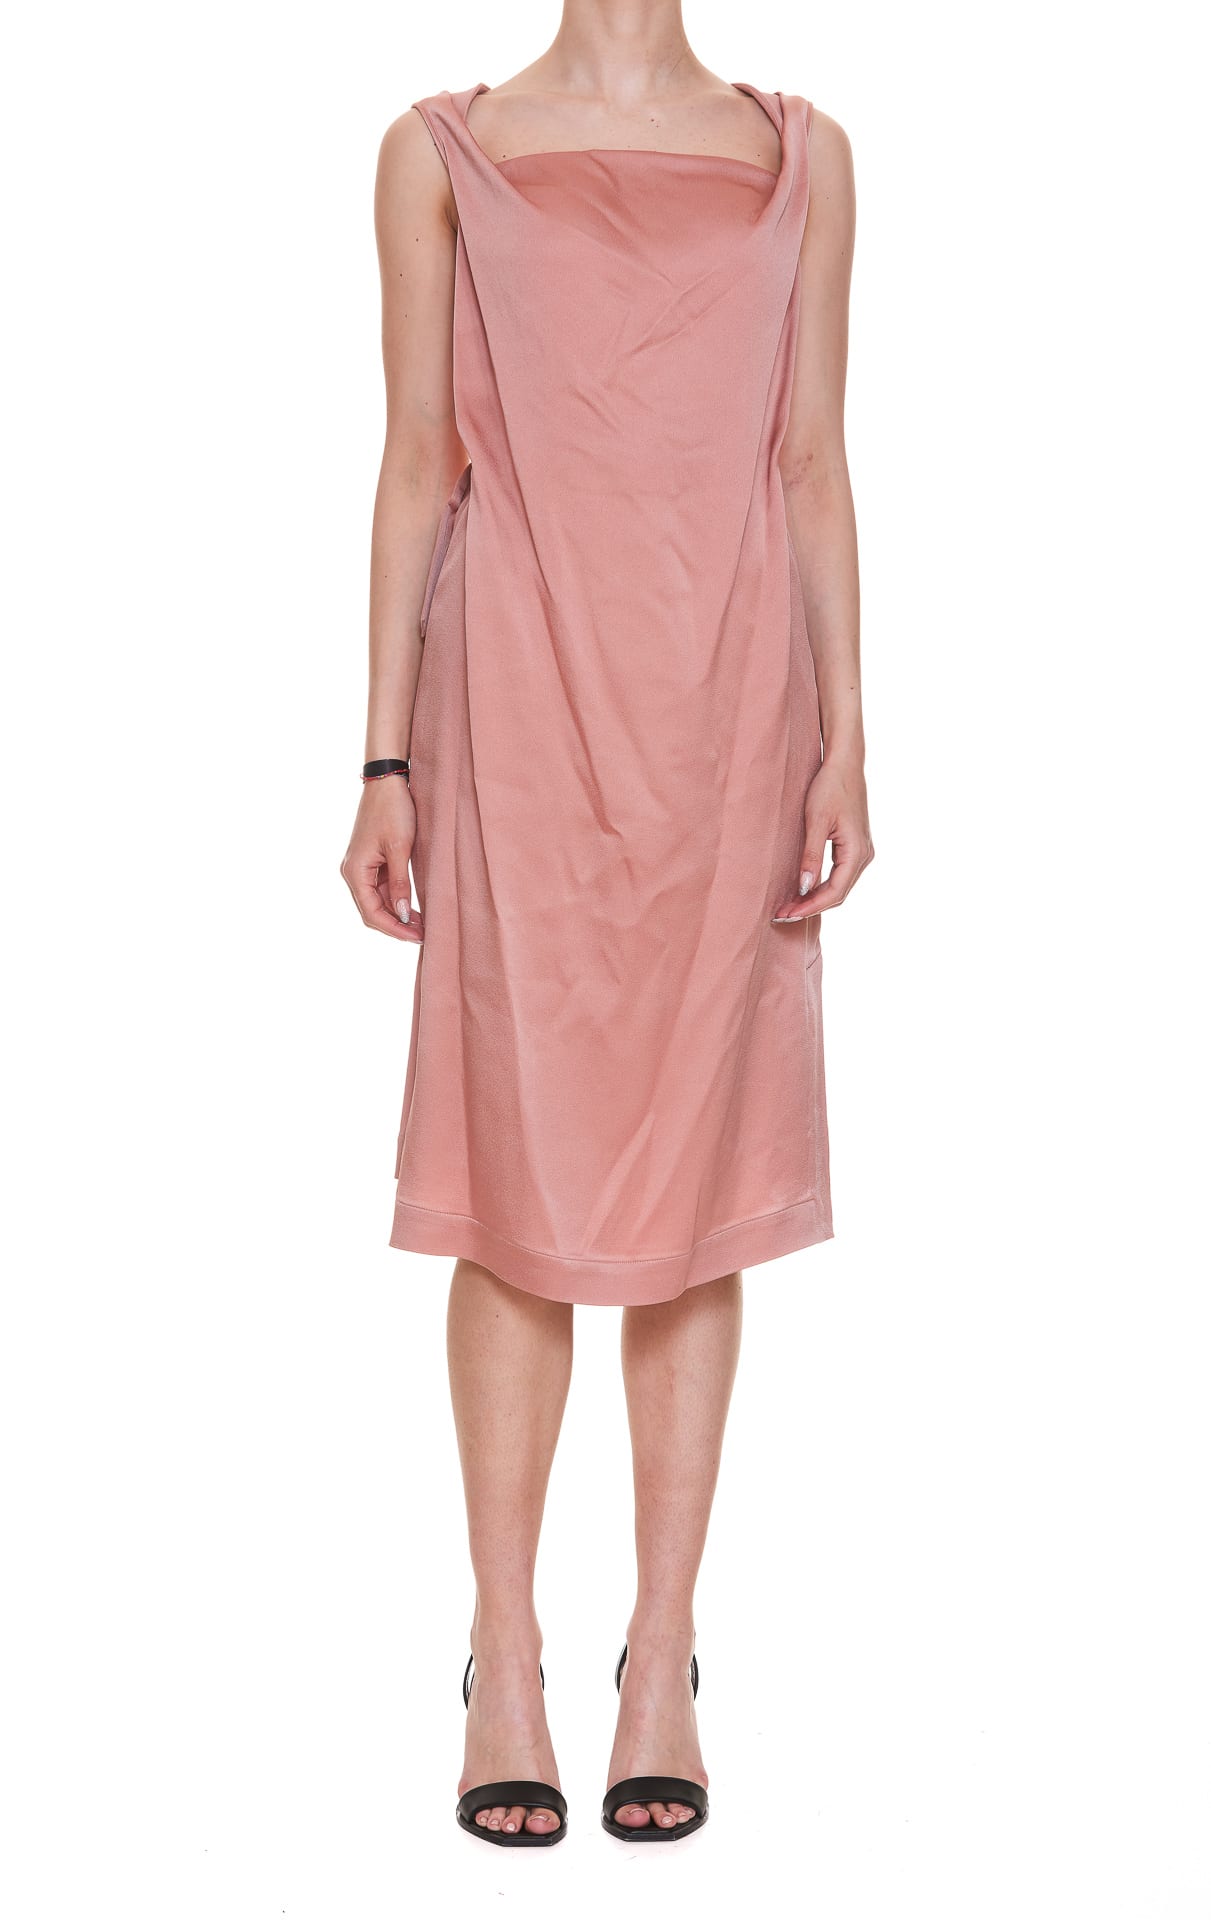 Vivienne Westwood Storm Dress